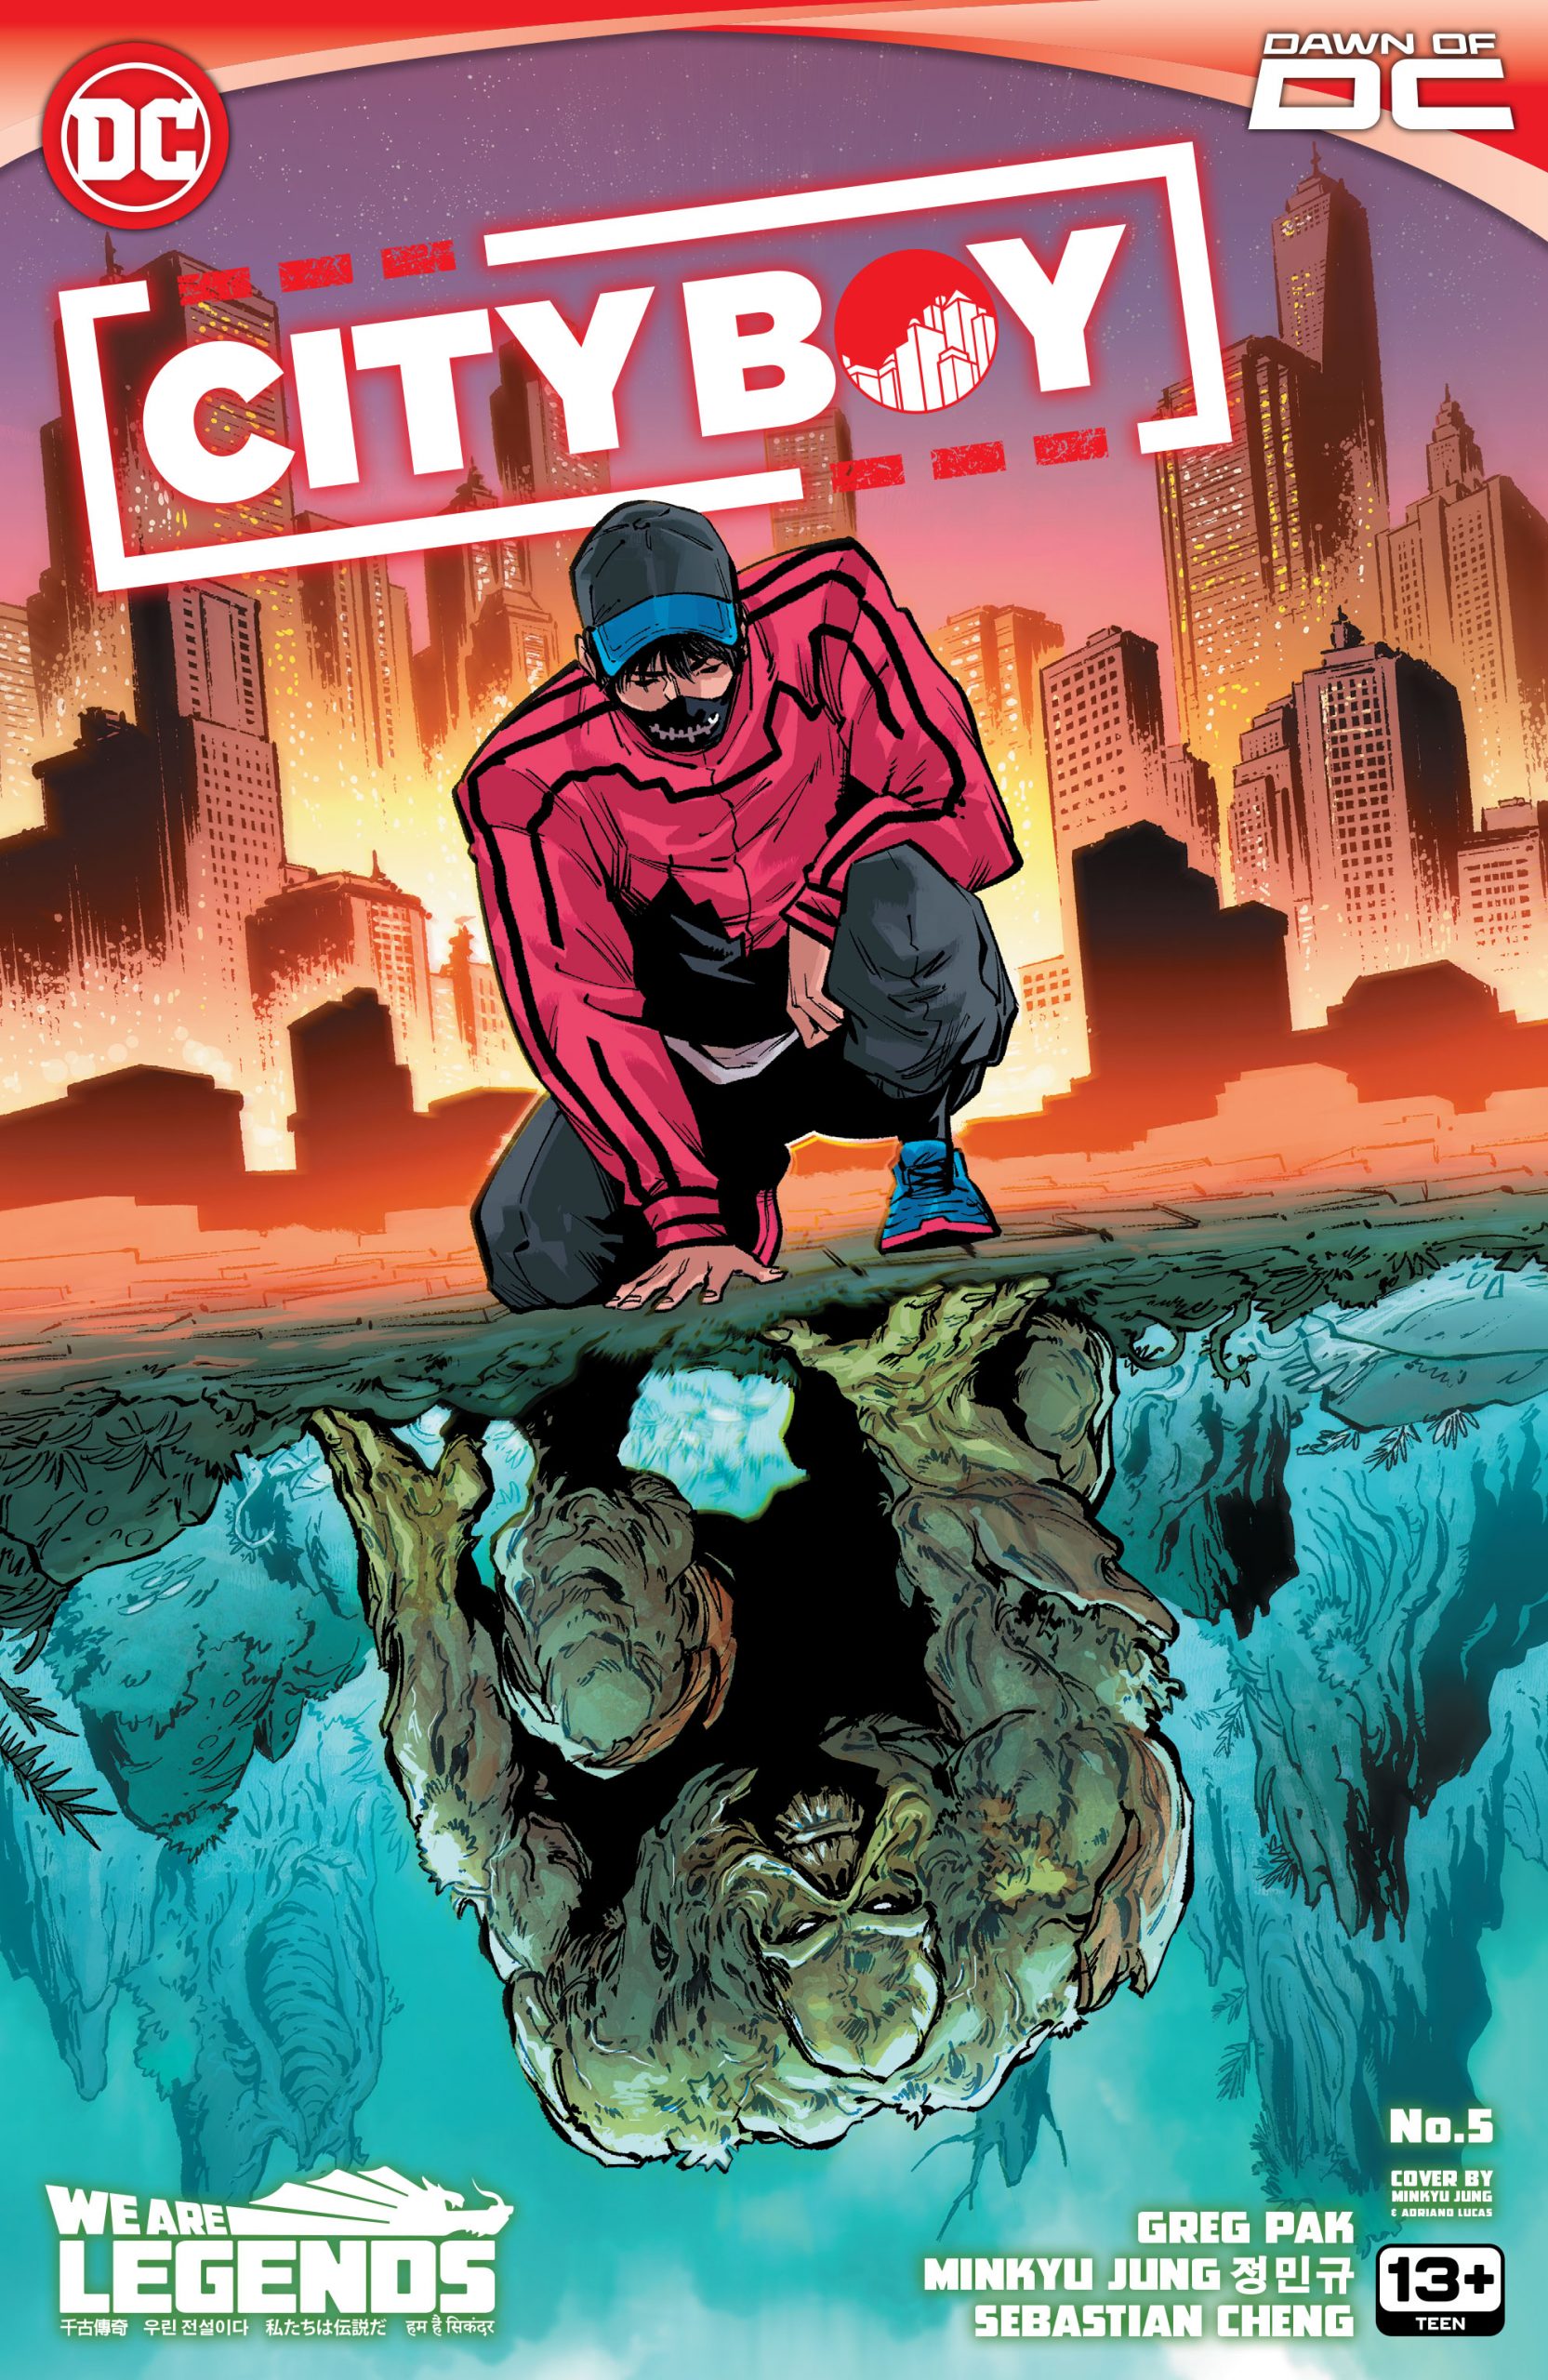 DC Preview: City Boy #5